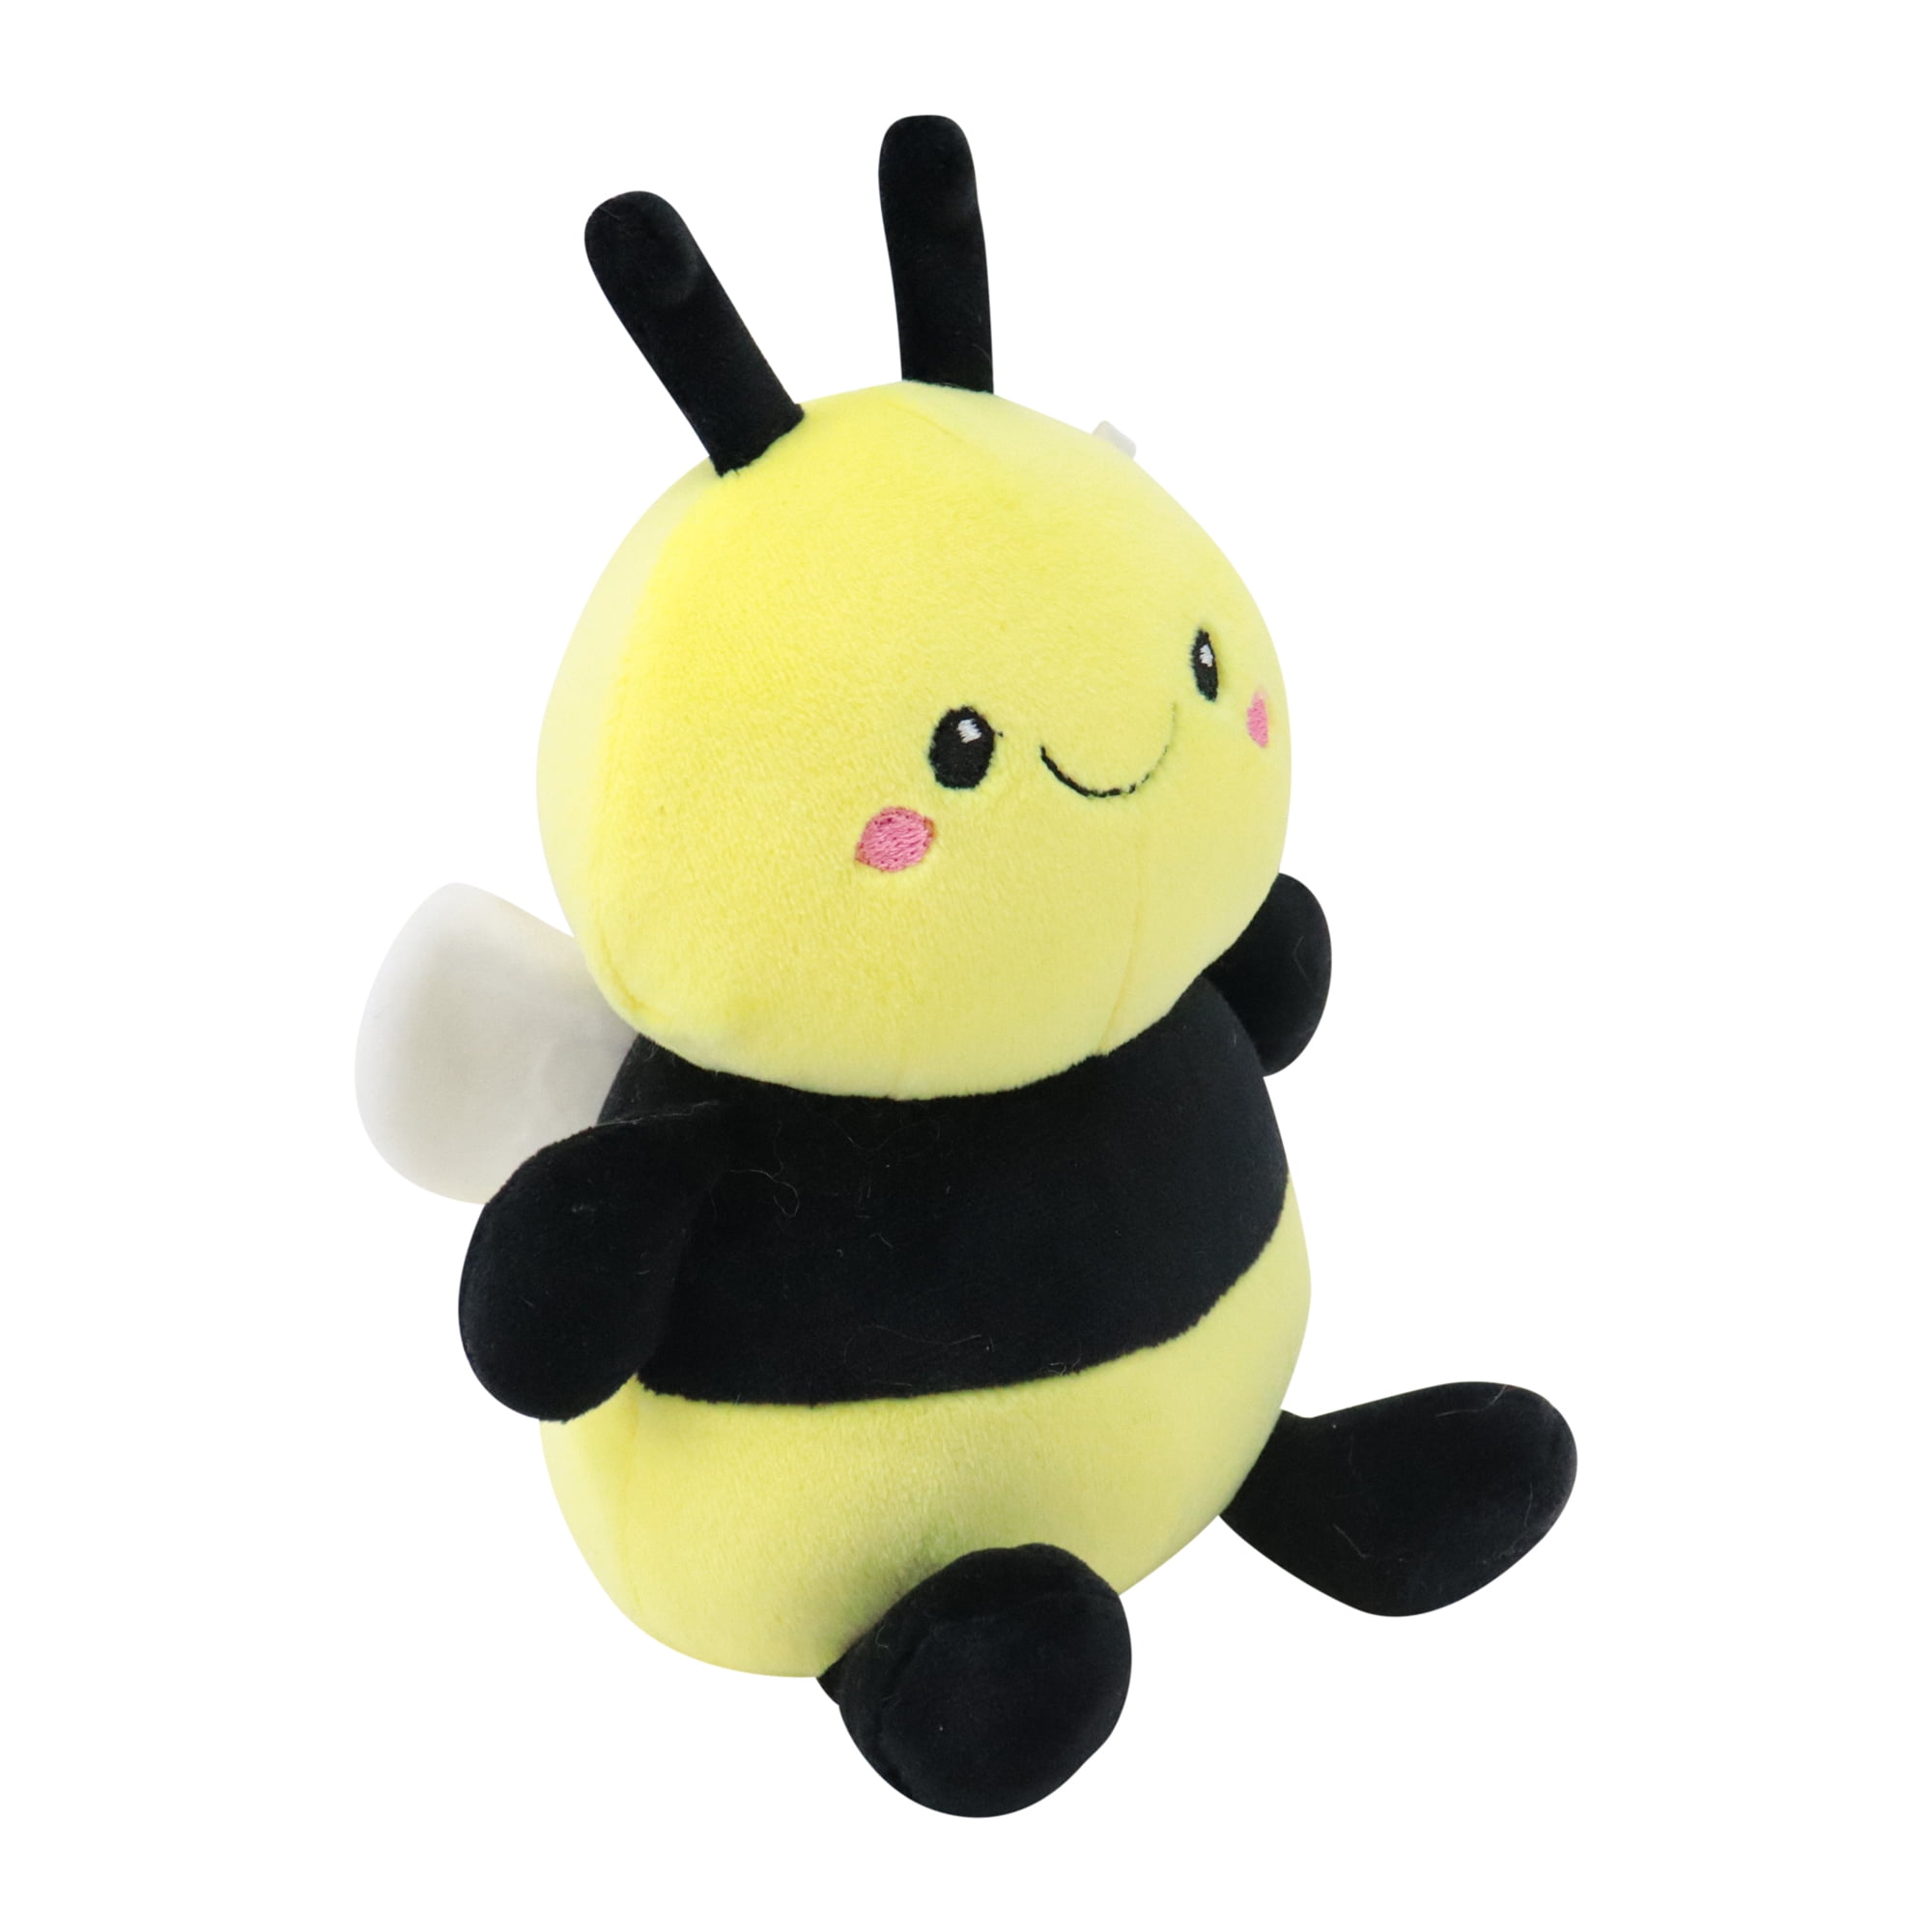 Avocatt Yellow Bee Plush Stuffed Animal